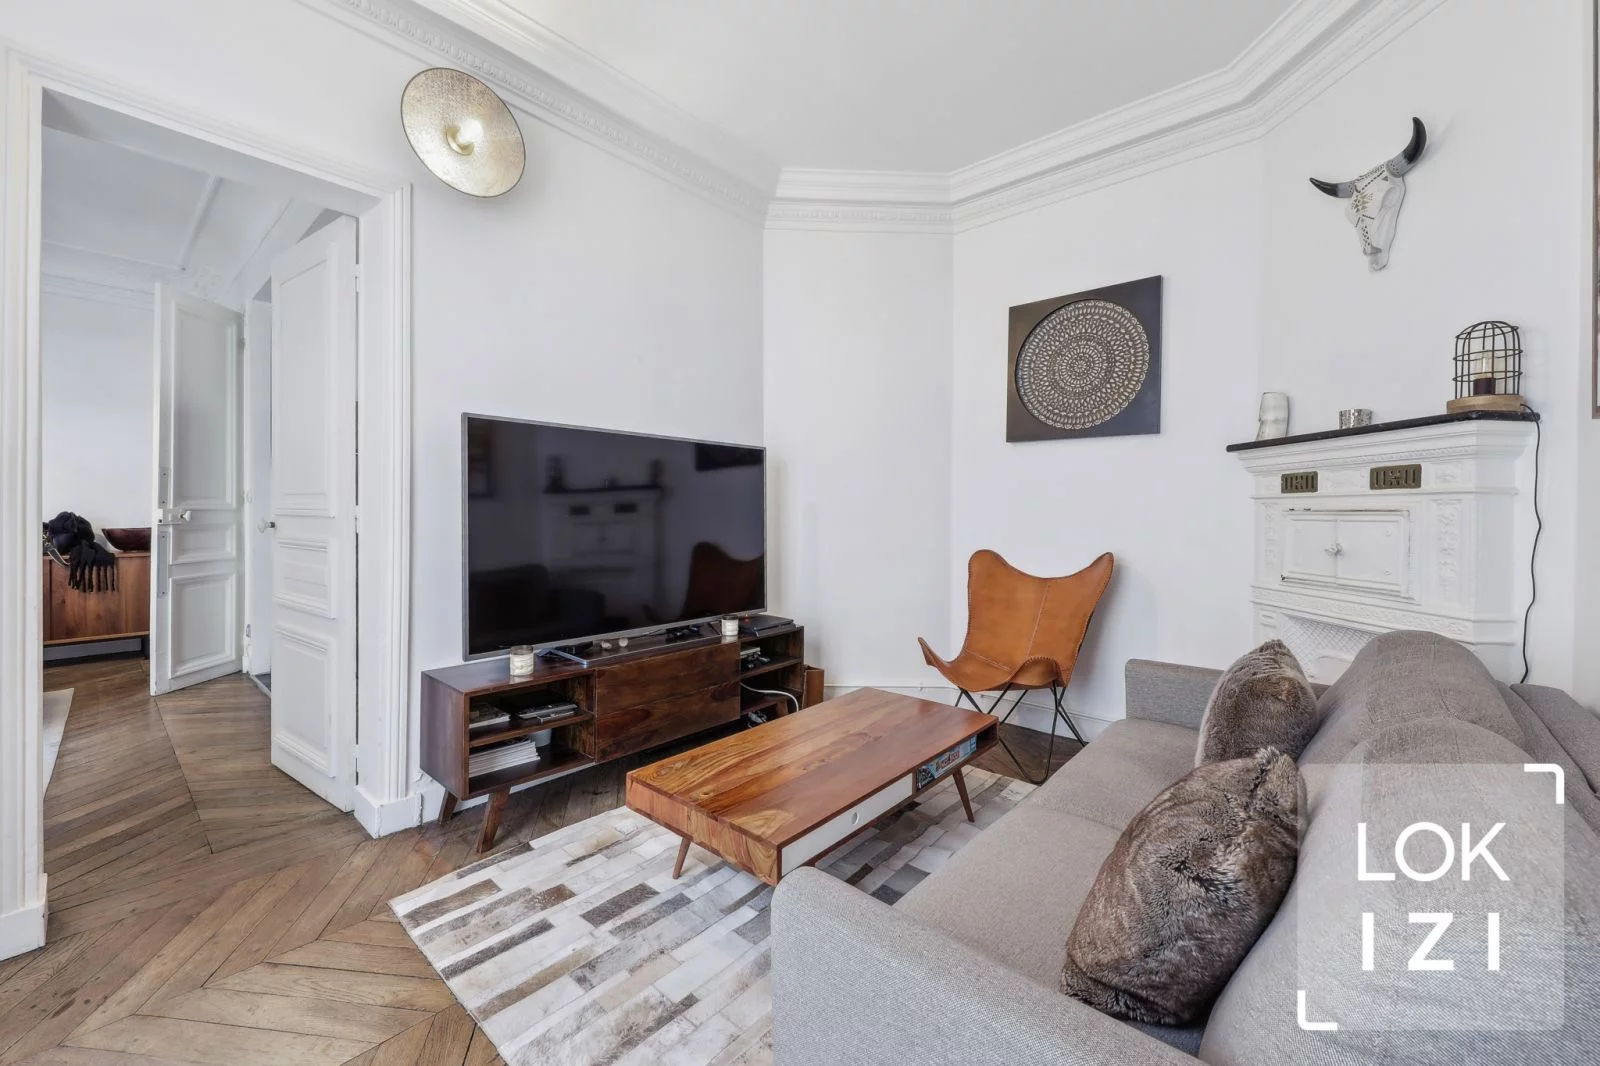 Location appartement meublé 2 pièces 48m² (Paris 16)